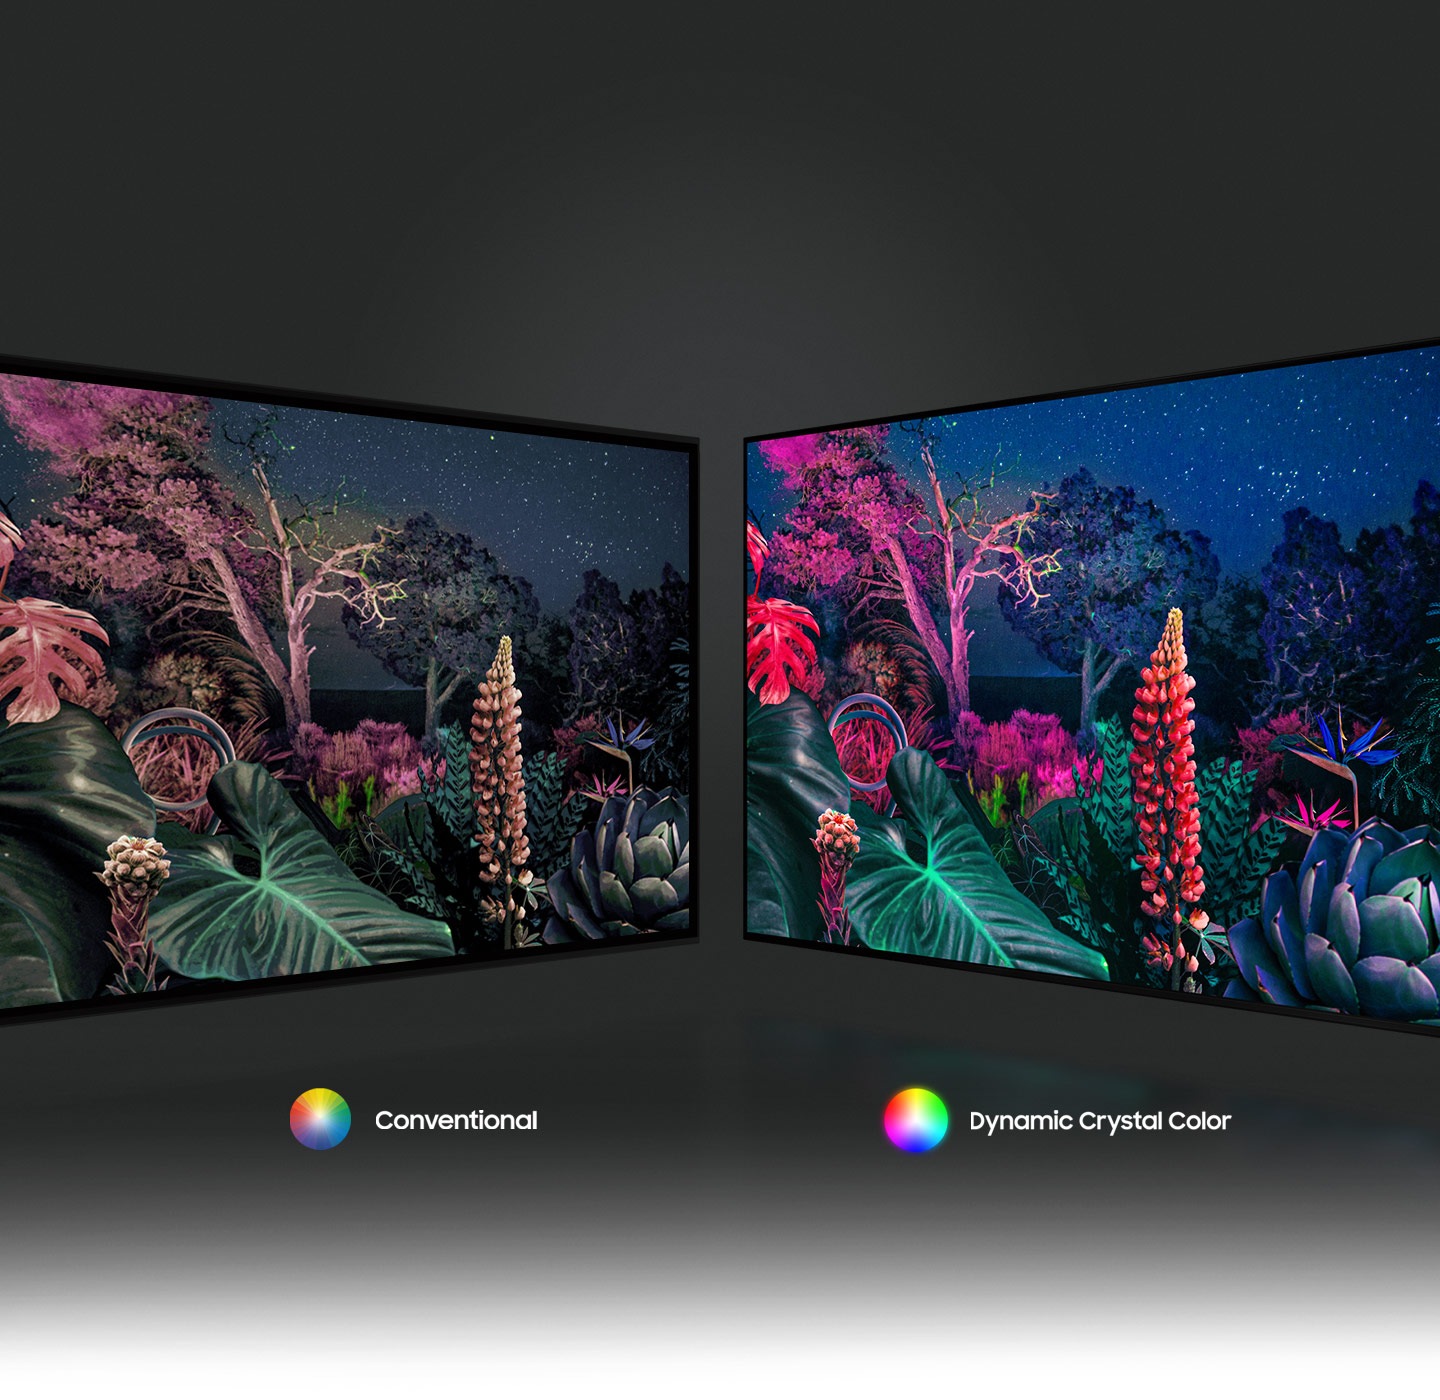 Hình ảnh khu rừng bên phải thể hiện hình ảnh có màu sắc phức tạp hơn nhờ công nghệ Dynamic Crystal Color so với công nghệ thông thường ở bên trái.